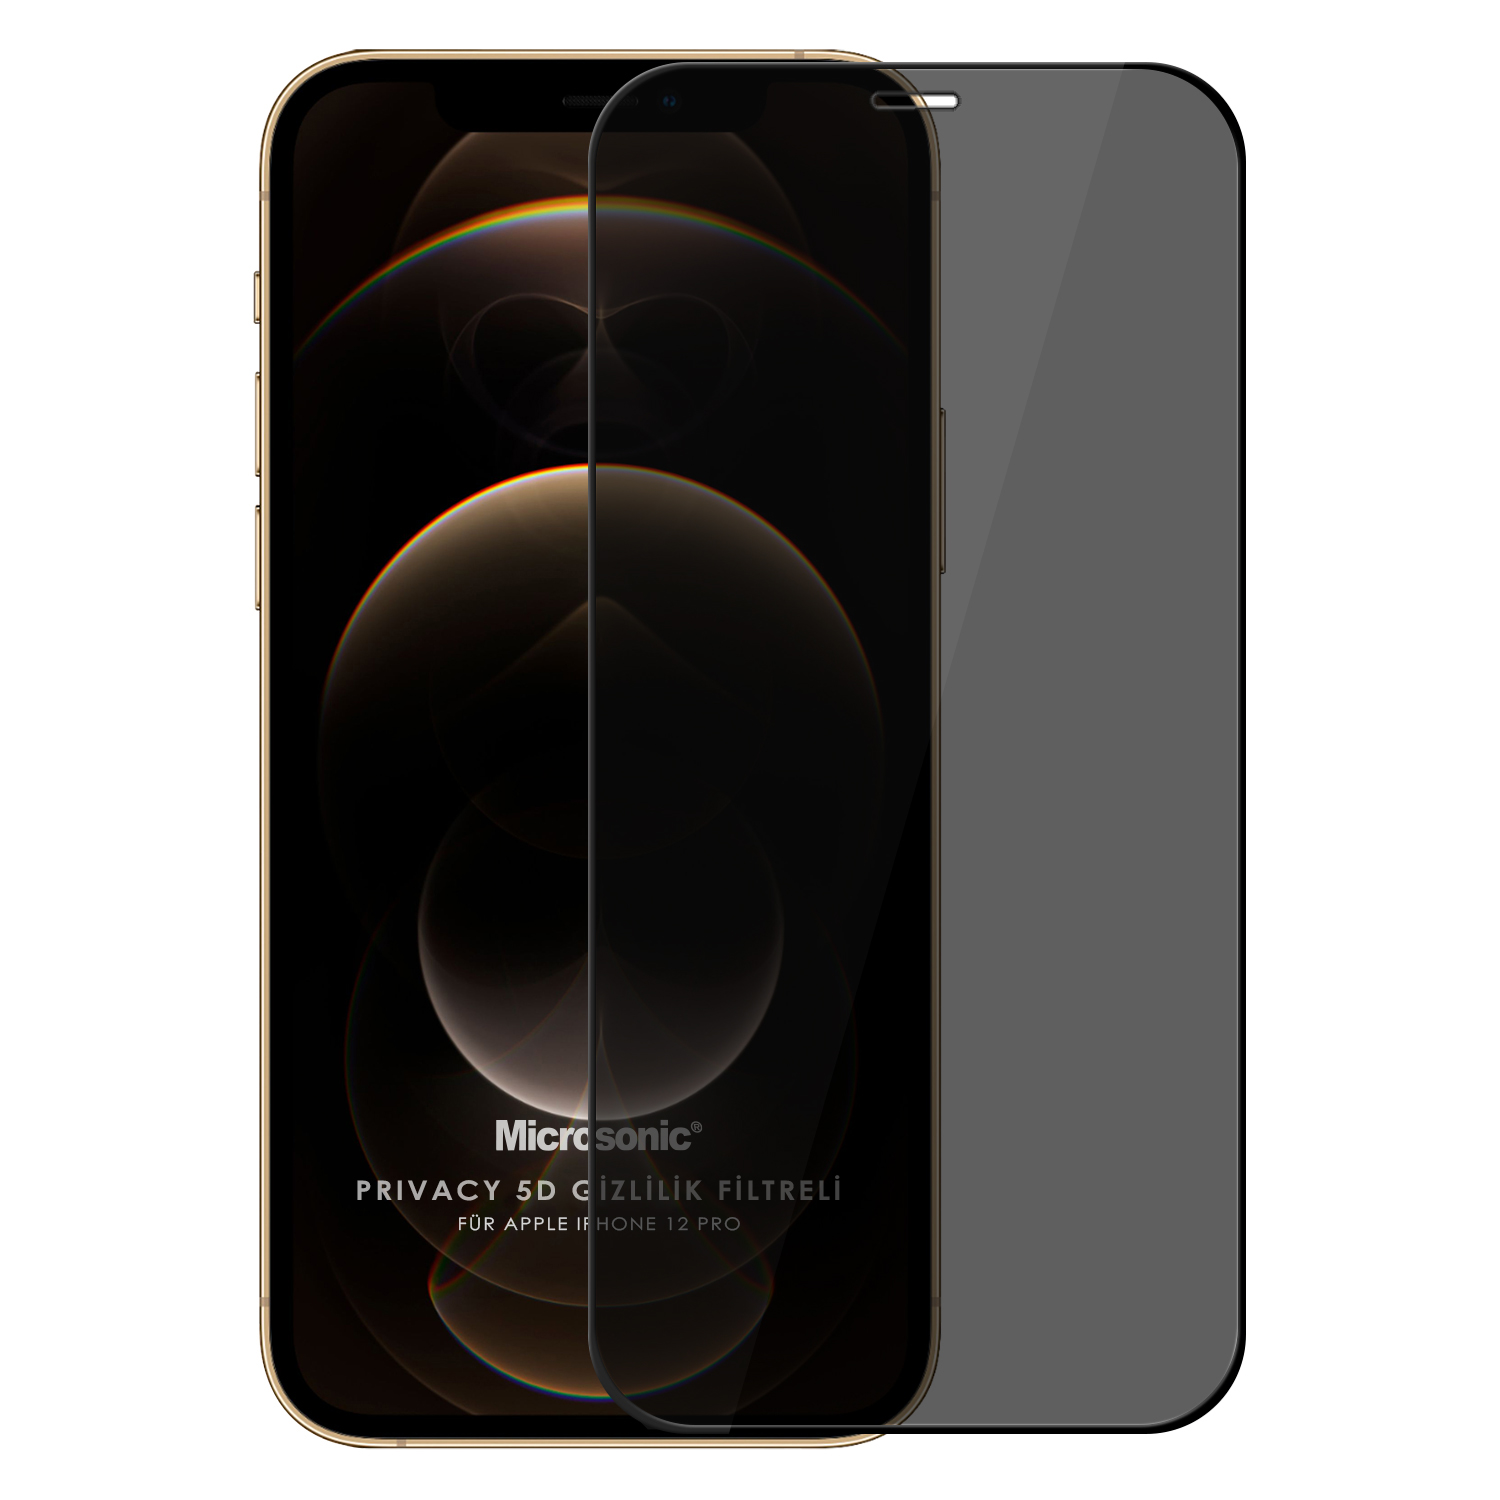 Microsonic Apple iPhone 12 Pro Privacy 5D Gizlilik Filtreli Cam Ekran Koruyucu Siyah